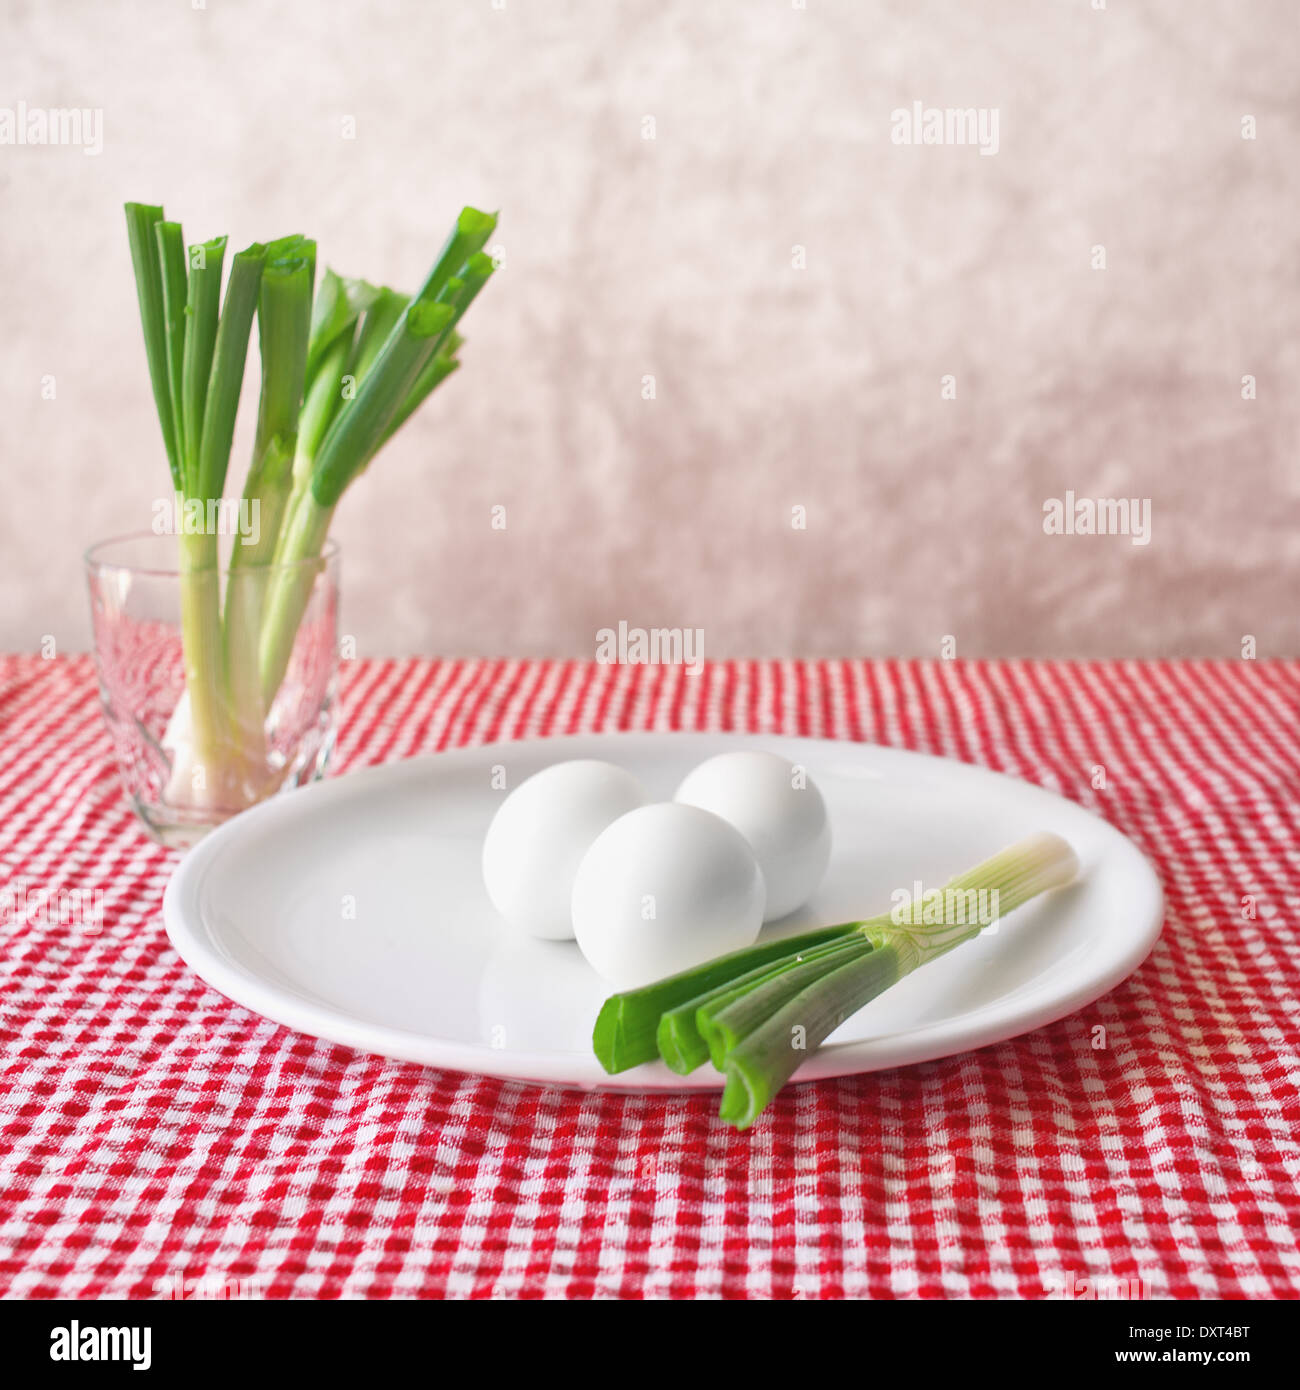 Los huevos de pollo cocido y cebolla dulce servido sobre placa blanca para el desayuno Foto de stock